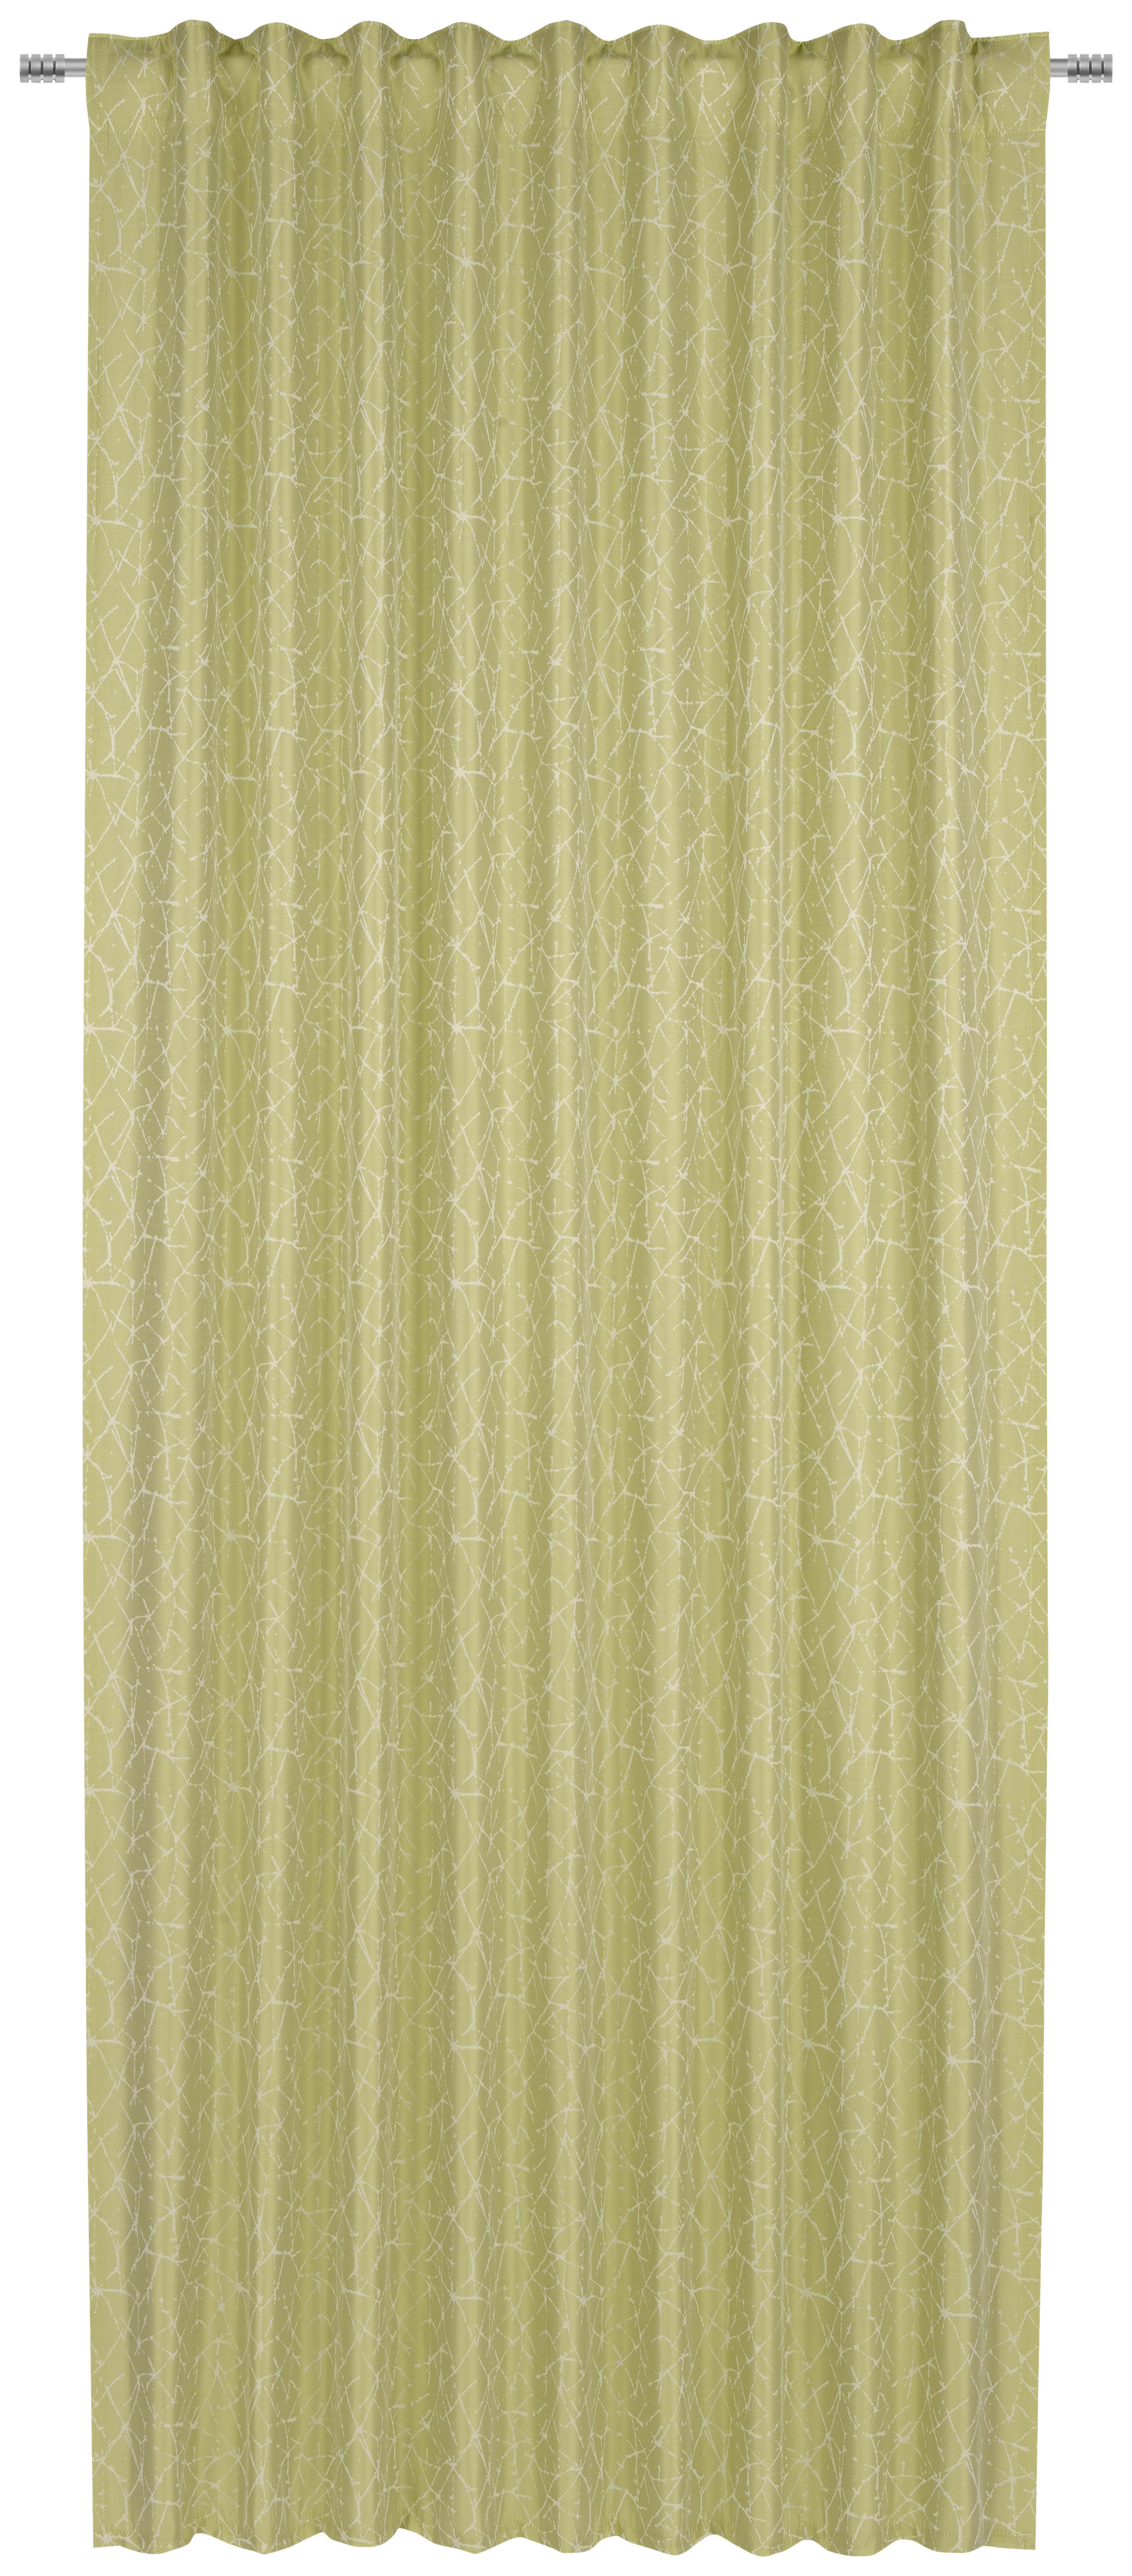 GOTOVA ZAVESA zelena - zelena, Konvencionalno, tekstil (140/245cm) - Esposa